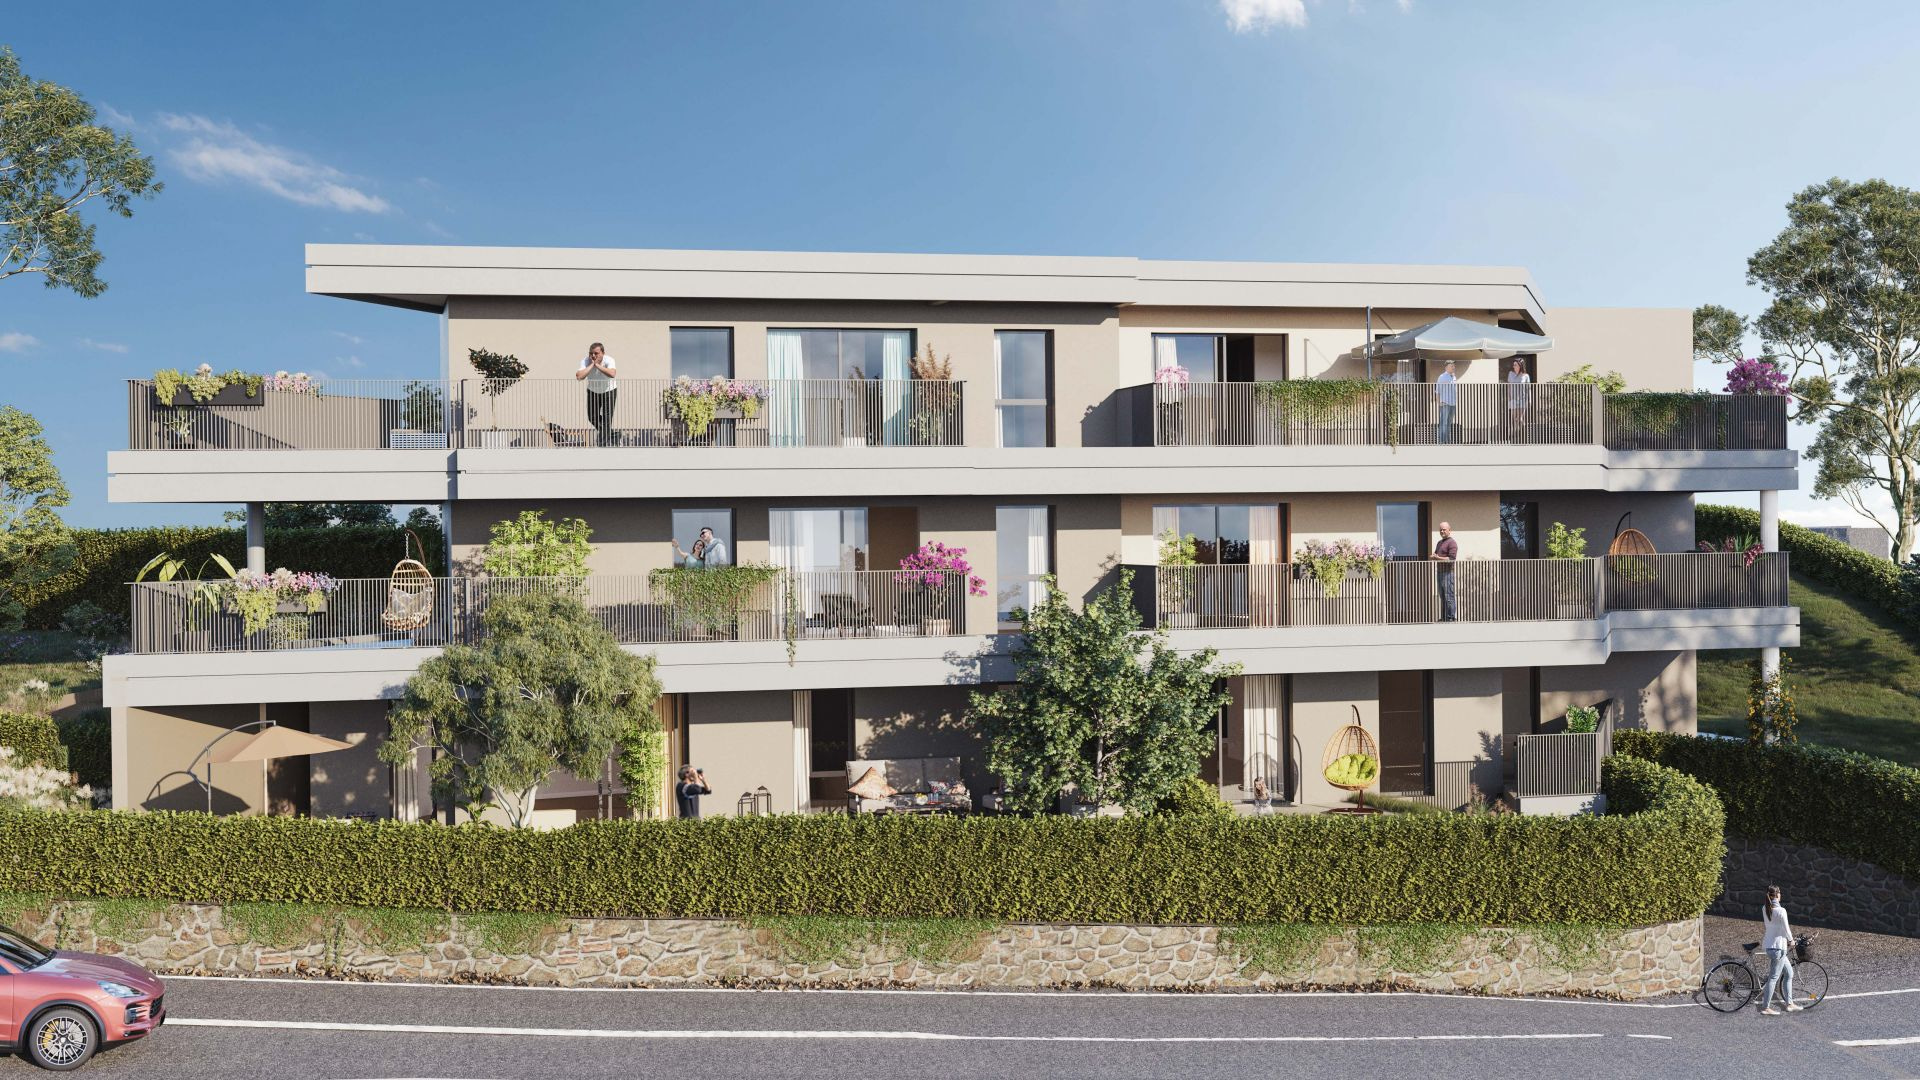 3 pièces avec jardin privatif dans une résidence neuve à Cannes